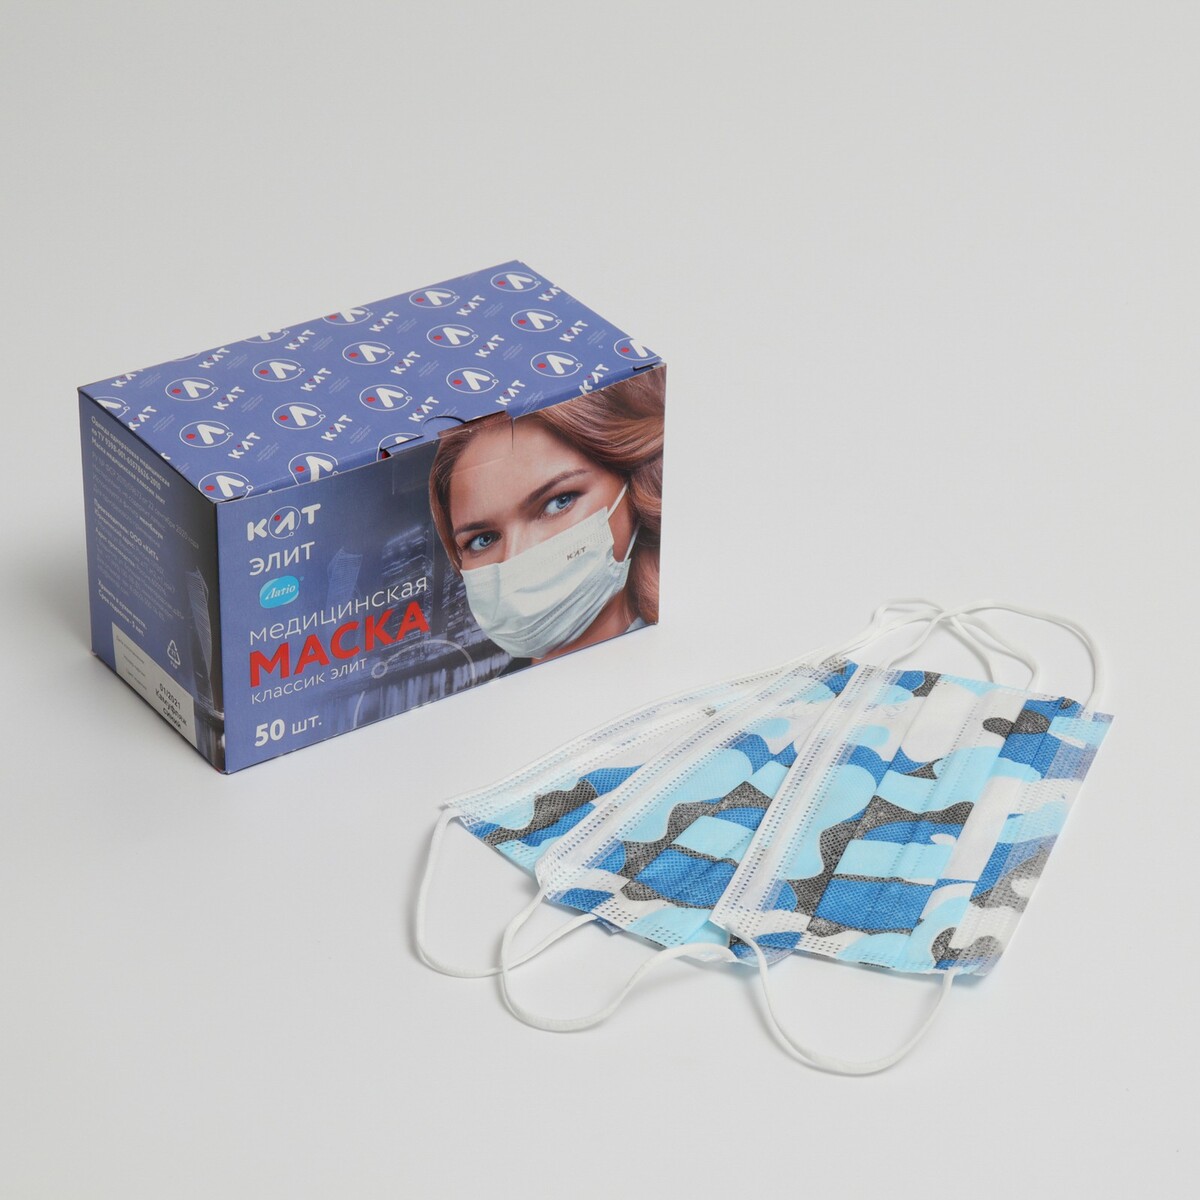 Маска медицинская latio синий камуфляж, 2 фиксатора формы, 50 шт картонный блок маска для плавания salvas domino md mask ca140c1tbsth синий